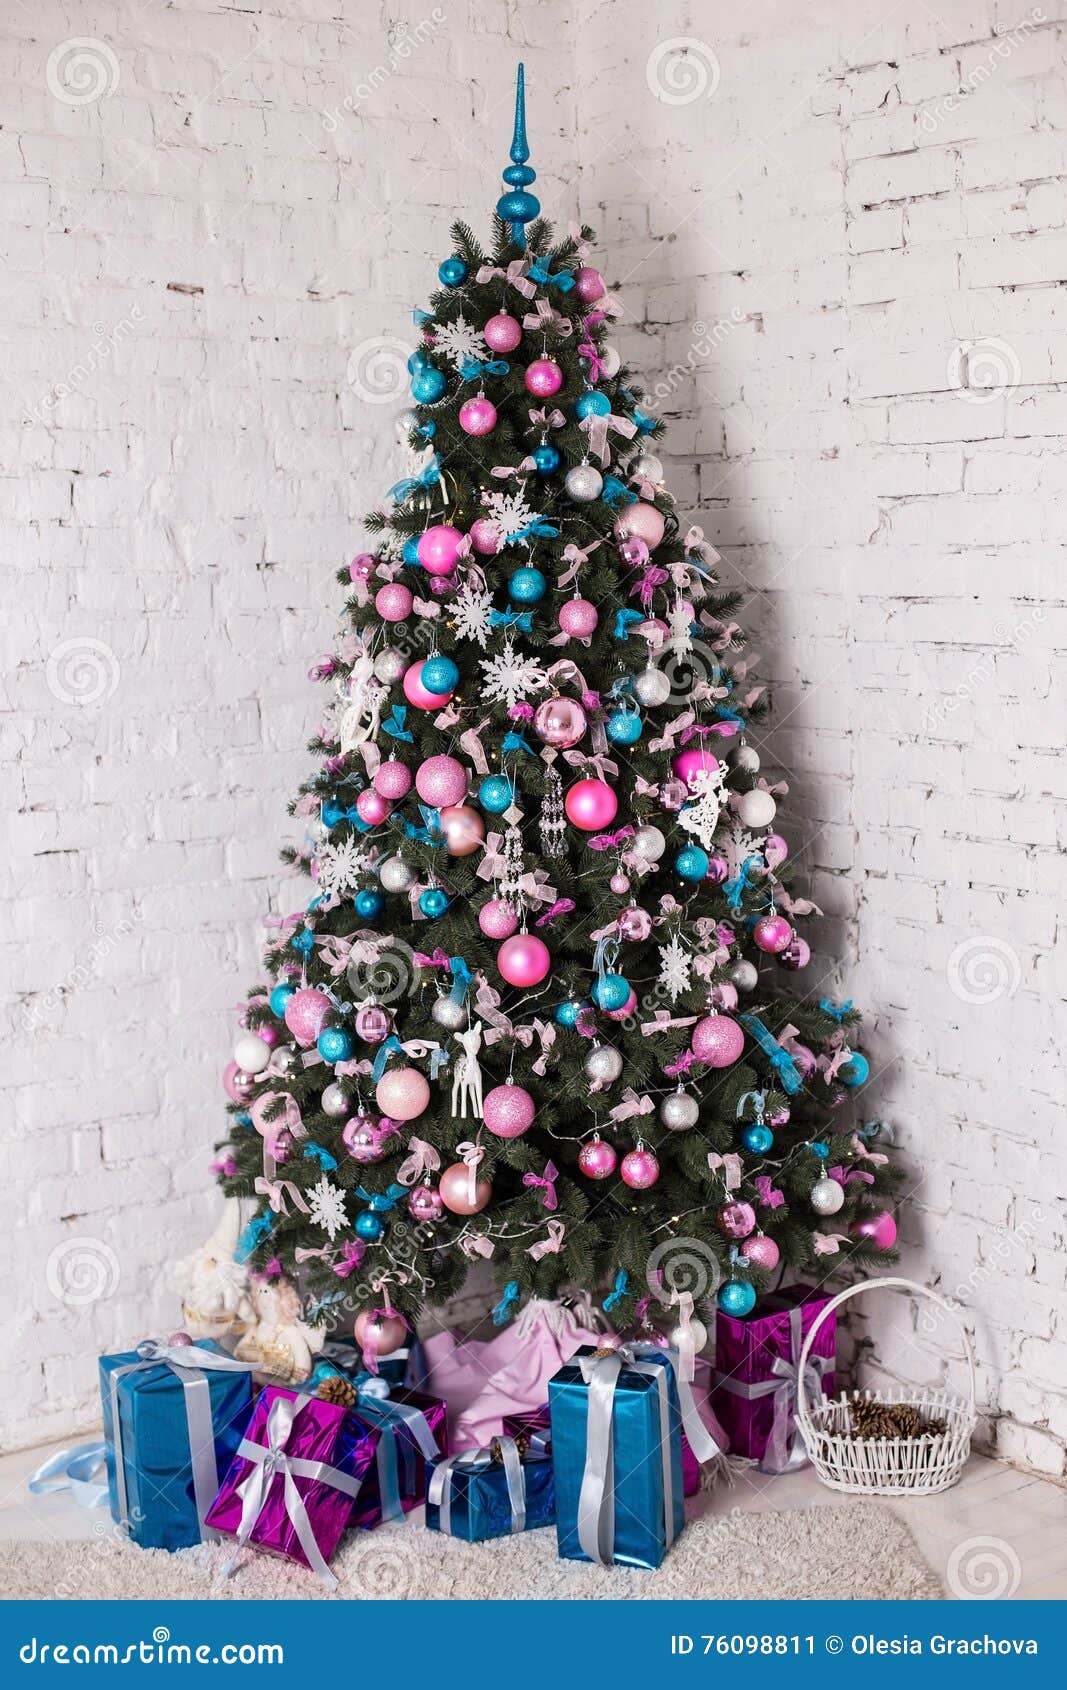 Decorated Christmas Tree on White Background Stock Image - Image ...